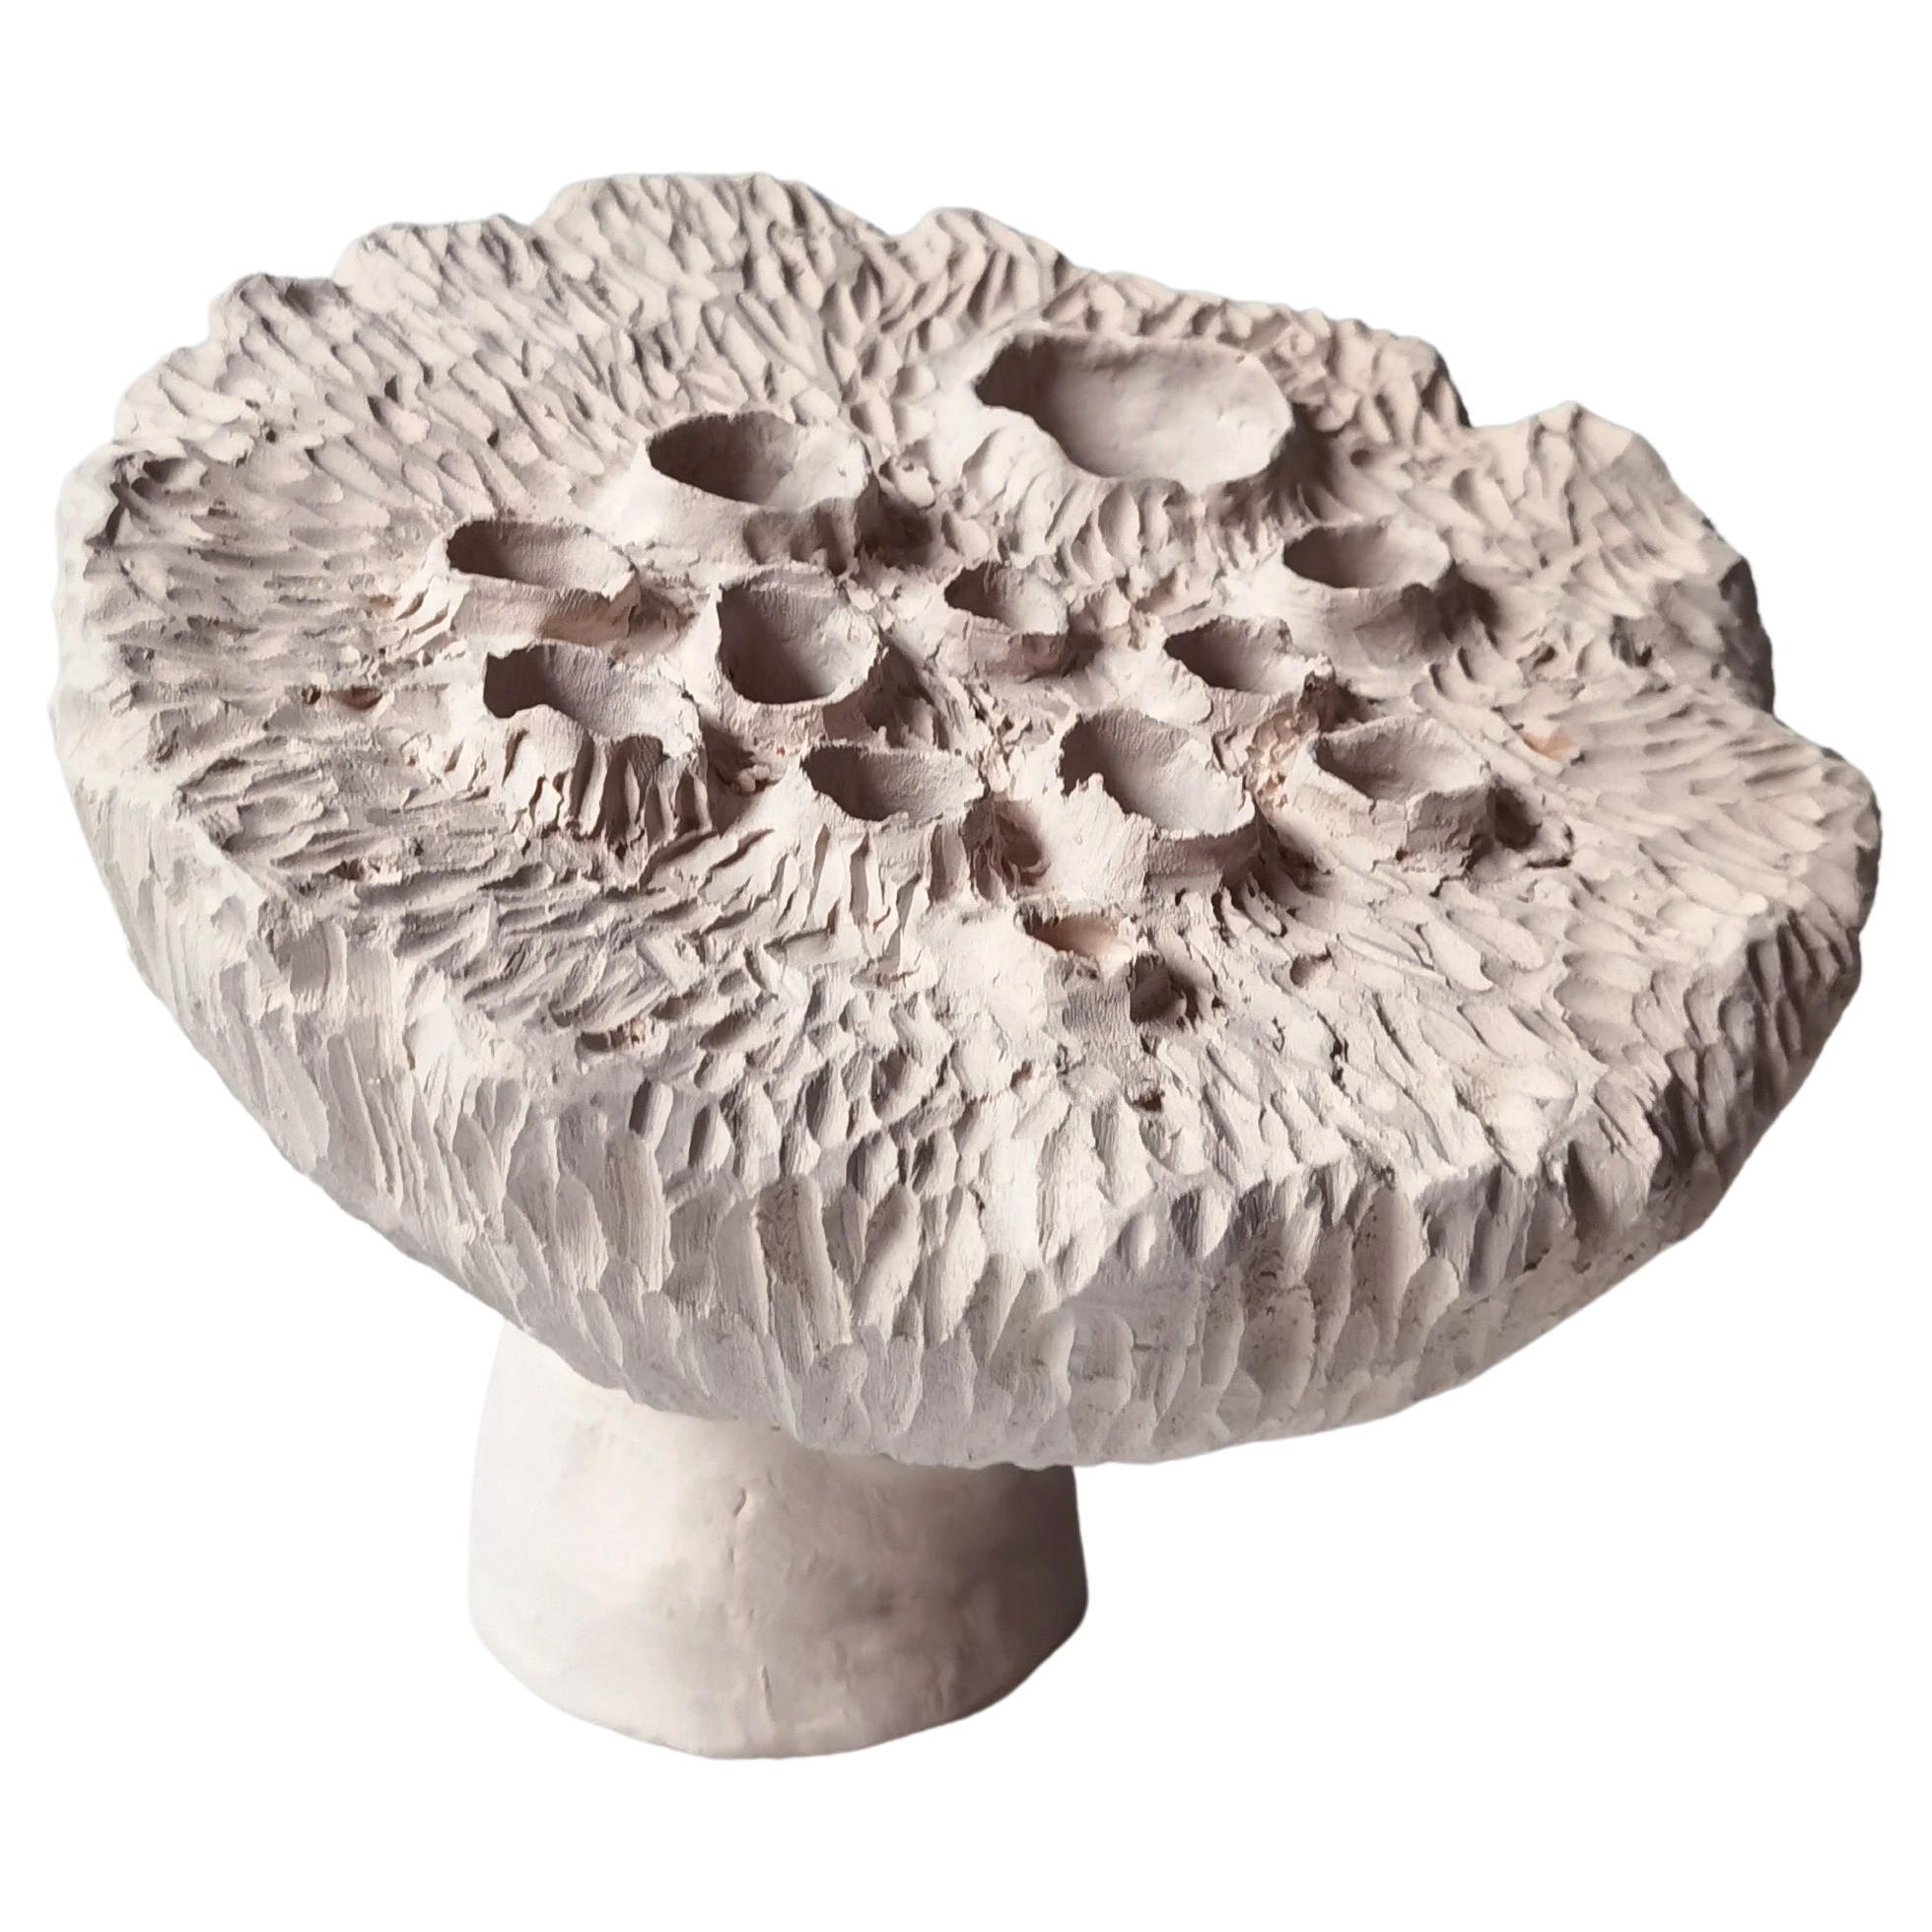 Stoneware Lotus Pod by Jan Ernst